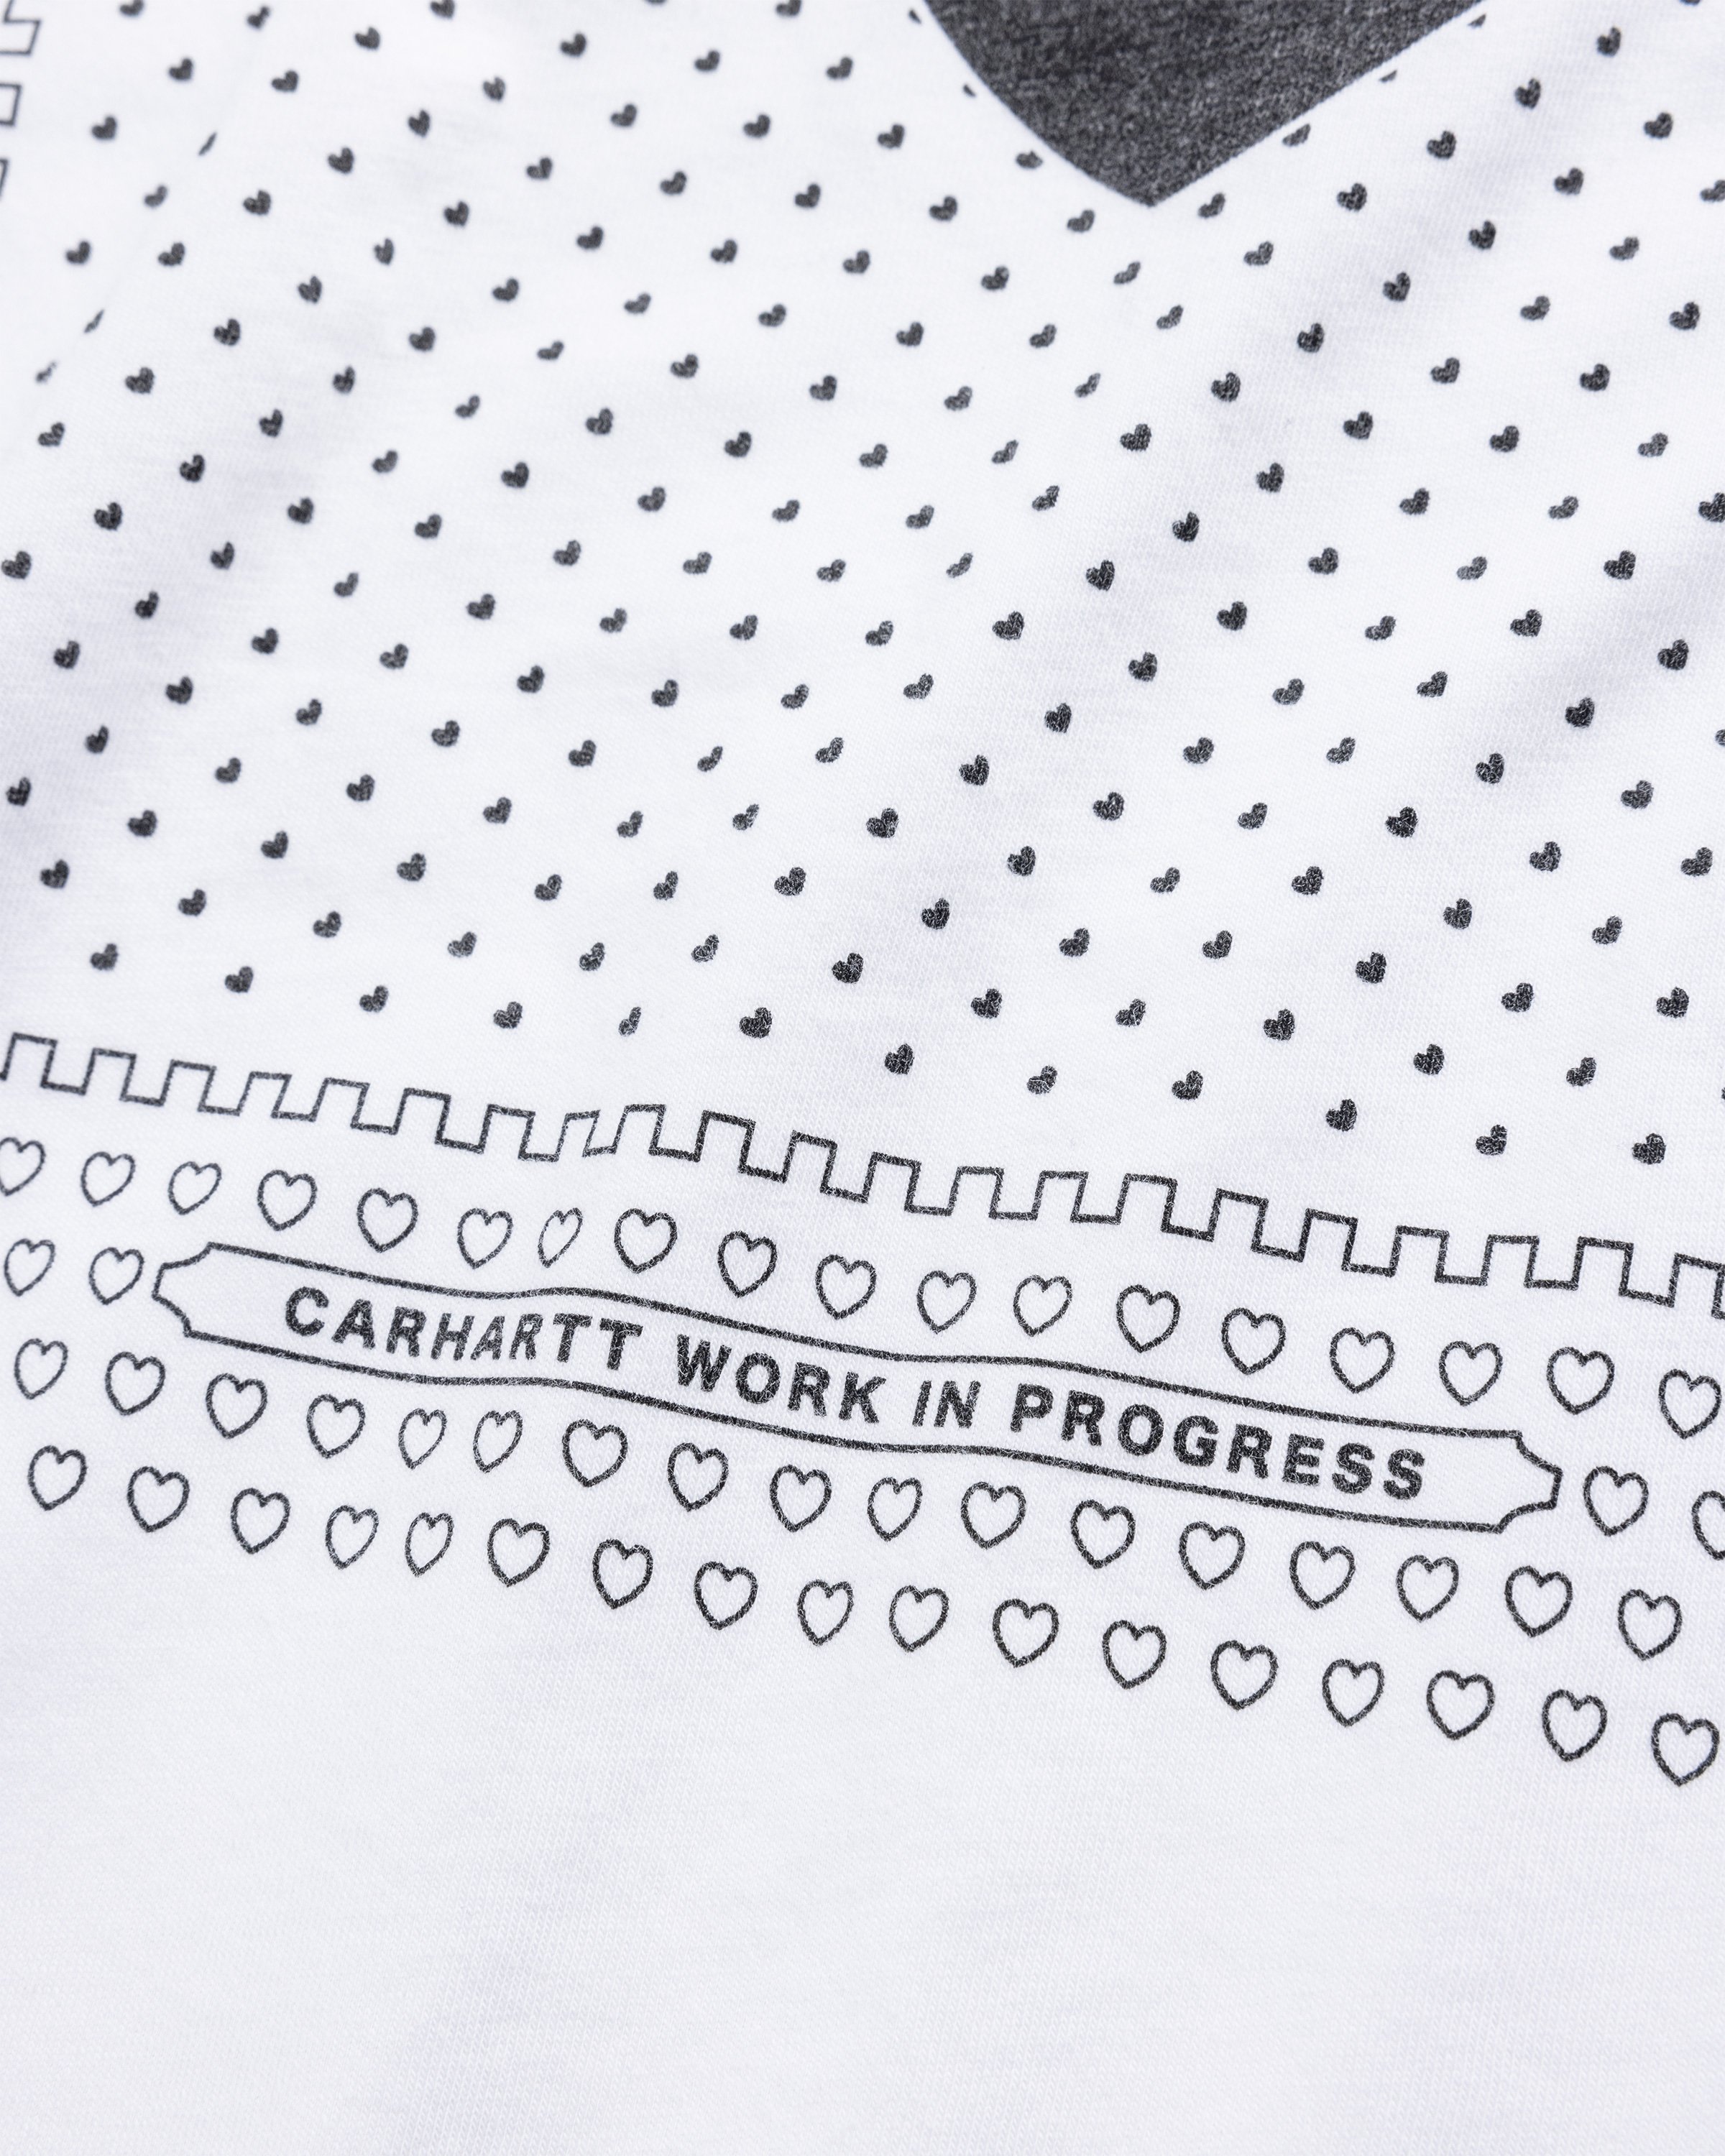 Carhartt WIP - S/S Heart Bandana TShirt White / Black /stone washed - Clothing - White - Image 7